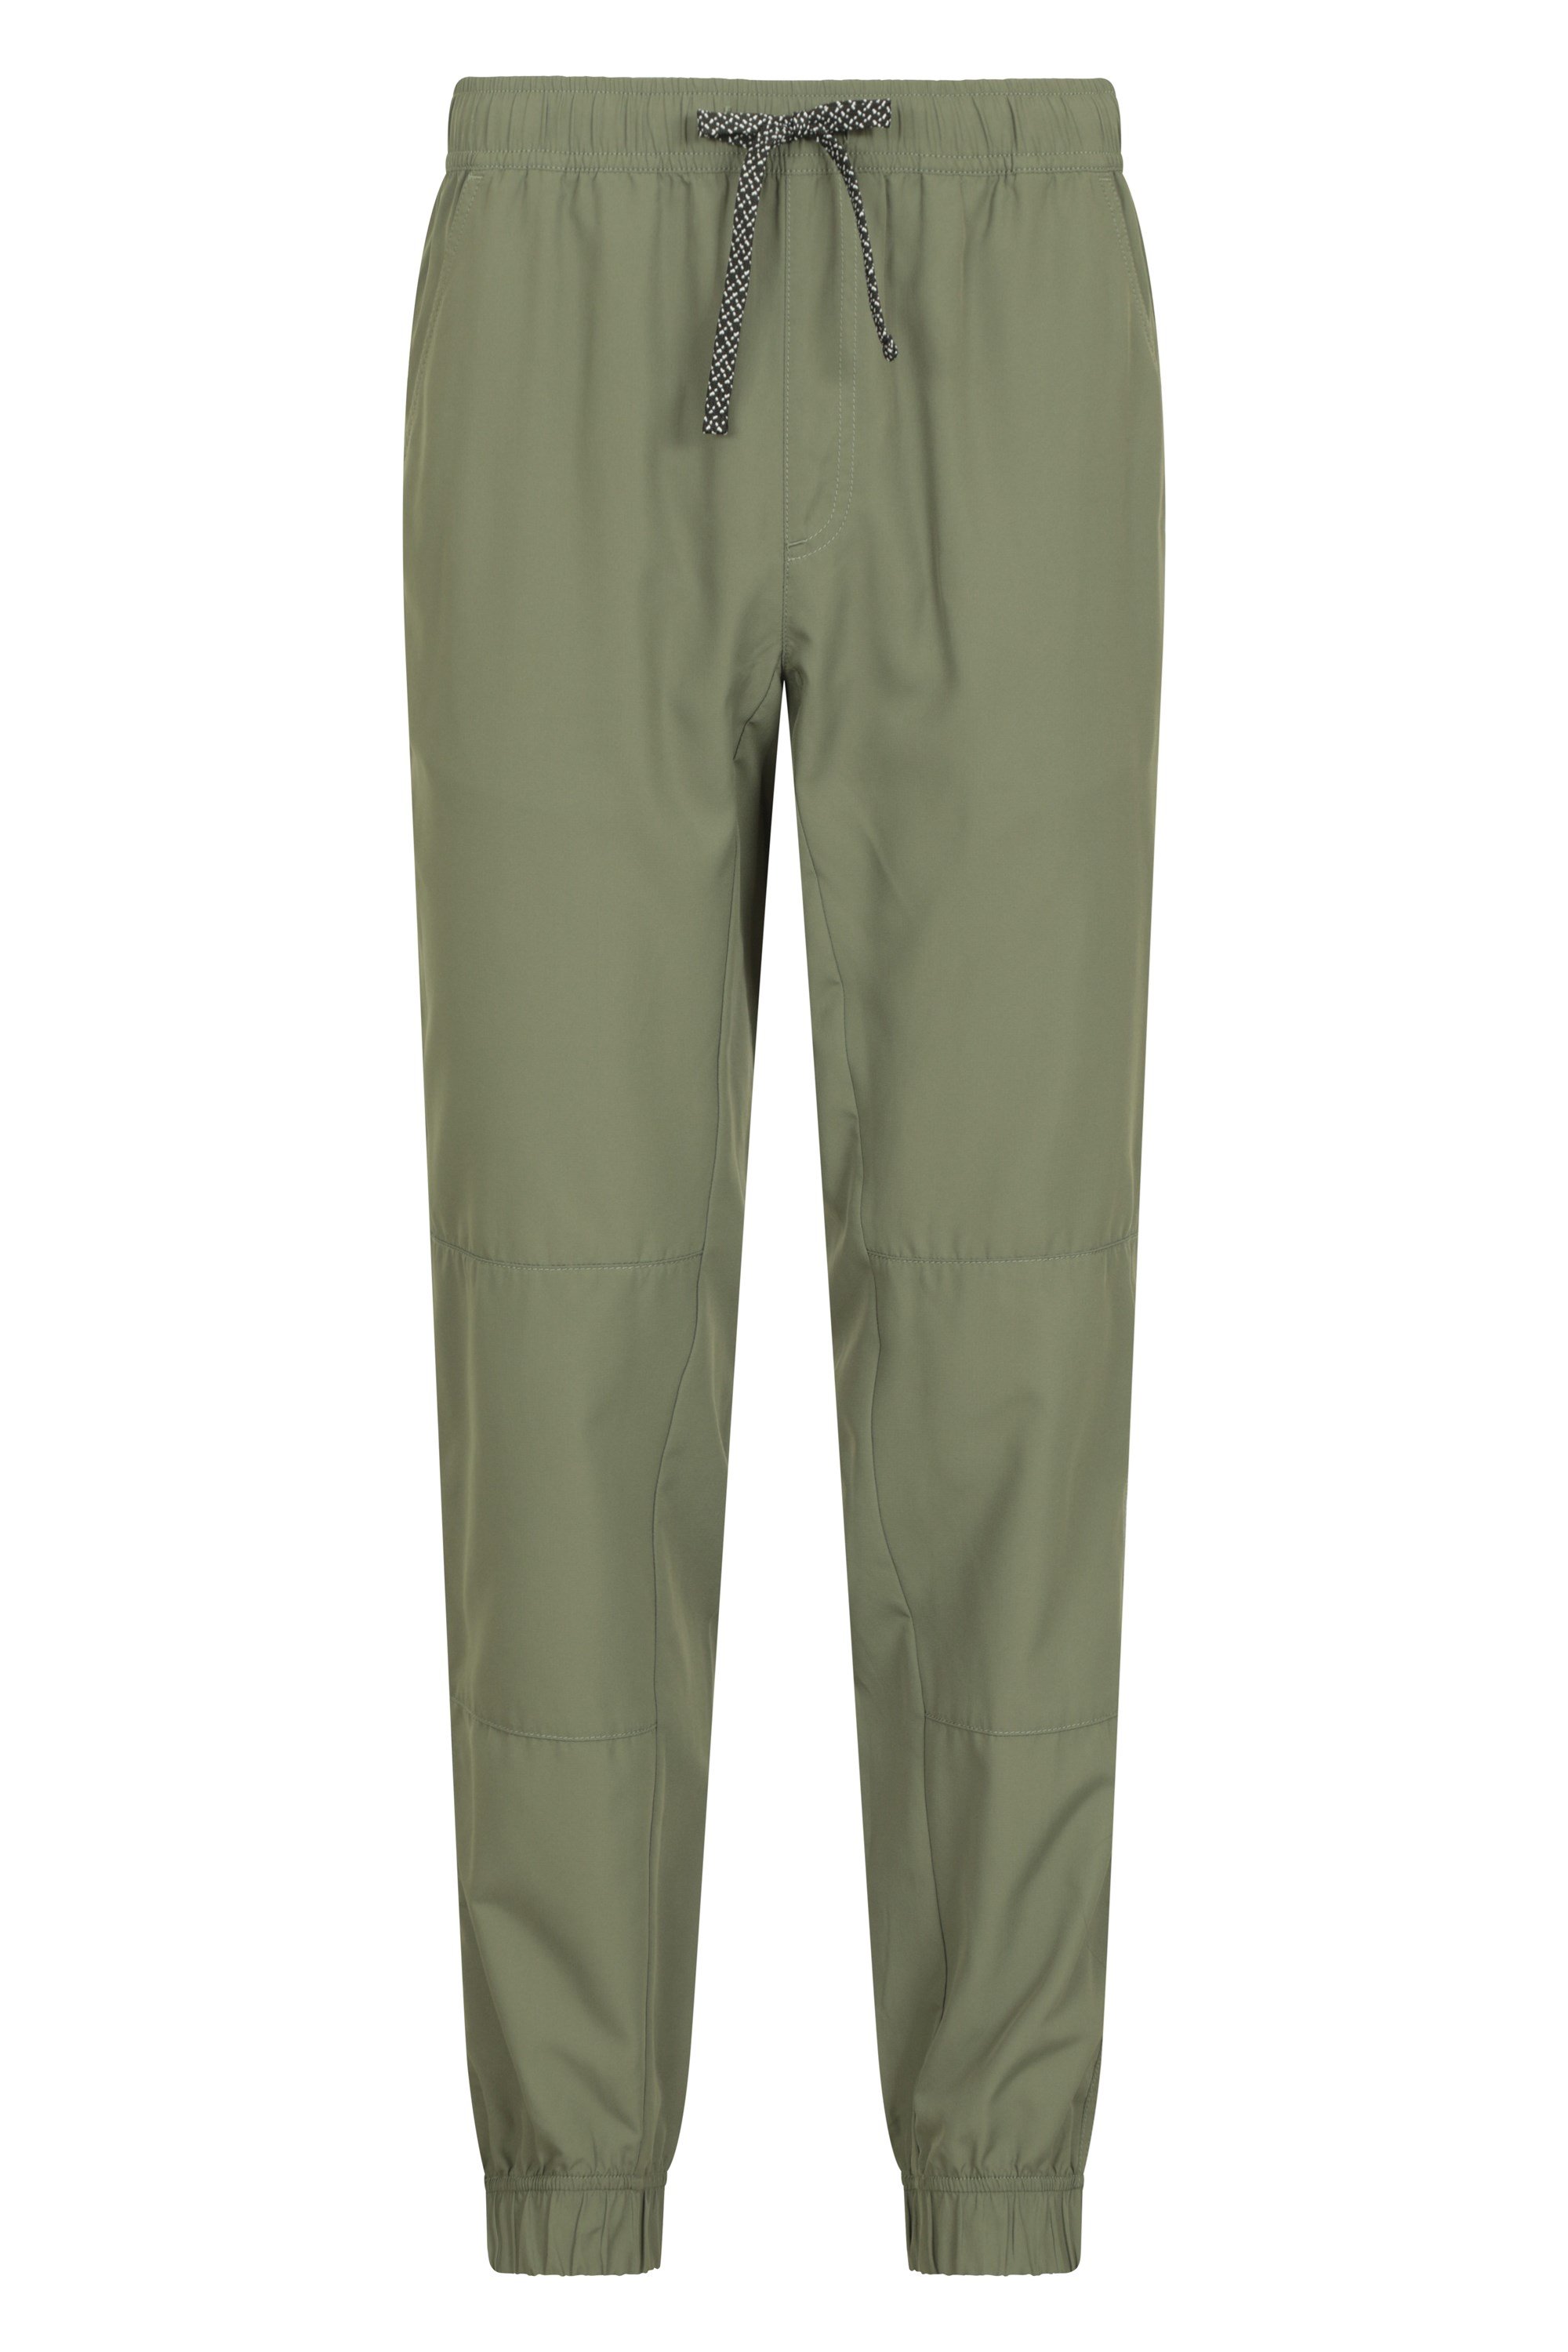 Action Mens Drawcord Hiking Pants - Short - Green